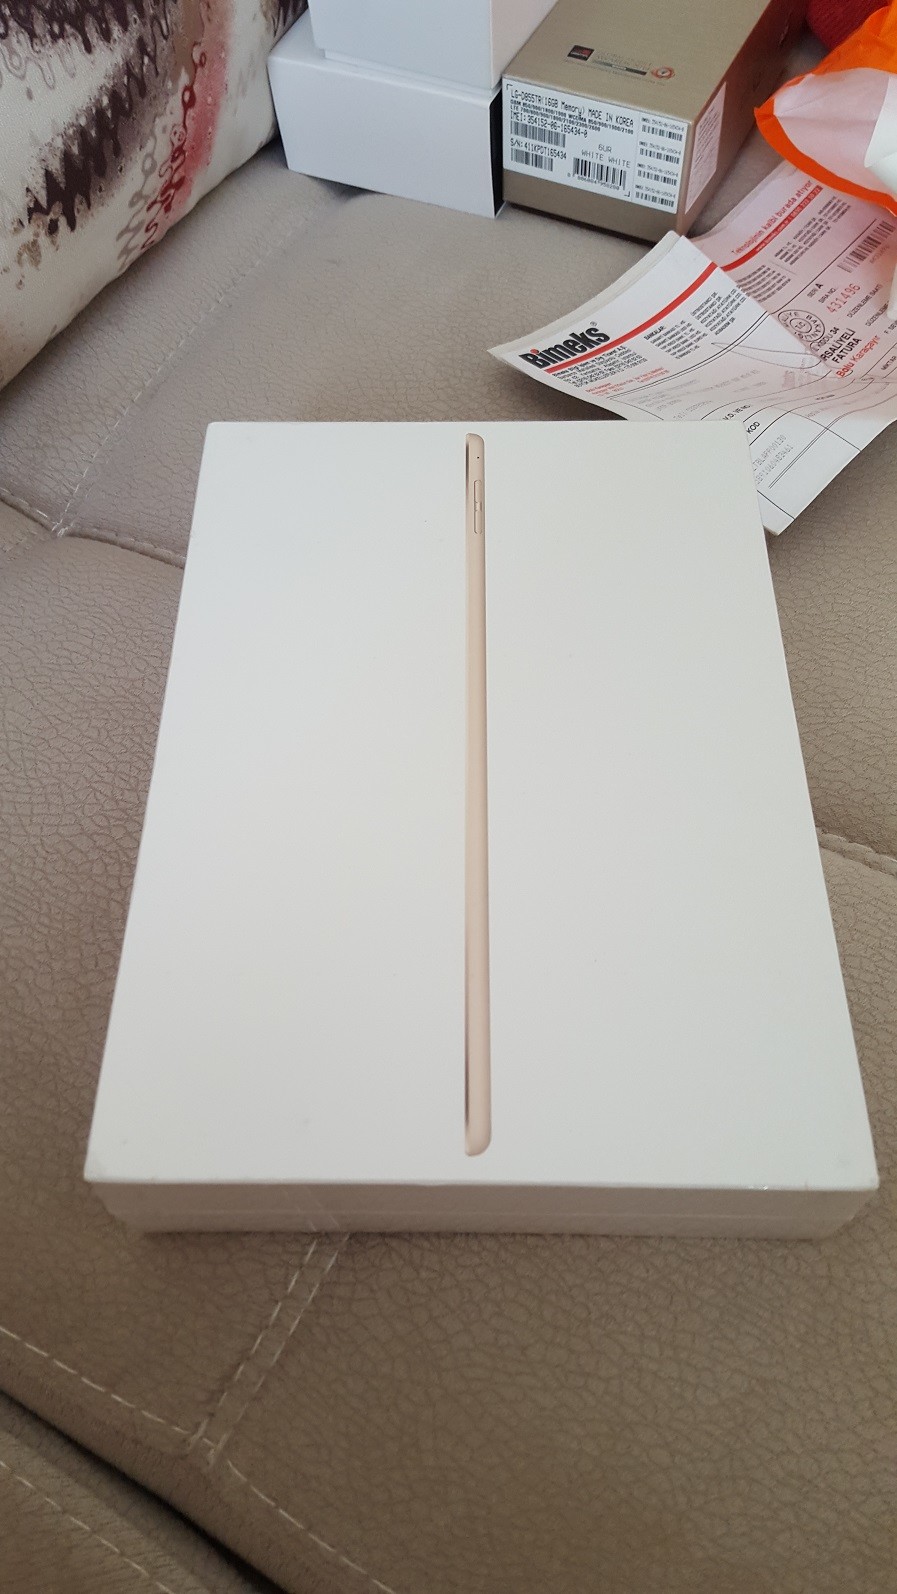  ACİLL SIFIR Apple iPad Air 2 16GB Wi-Fi 9,7'' 4G 1400 TL OLDU